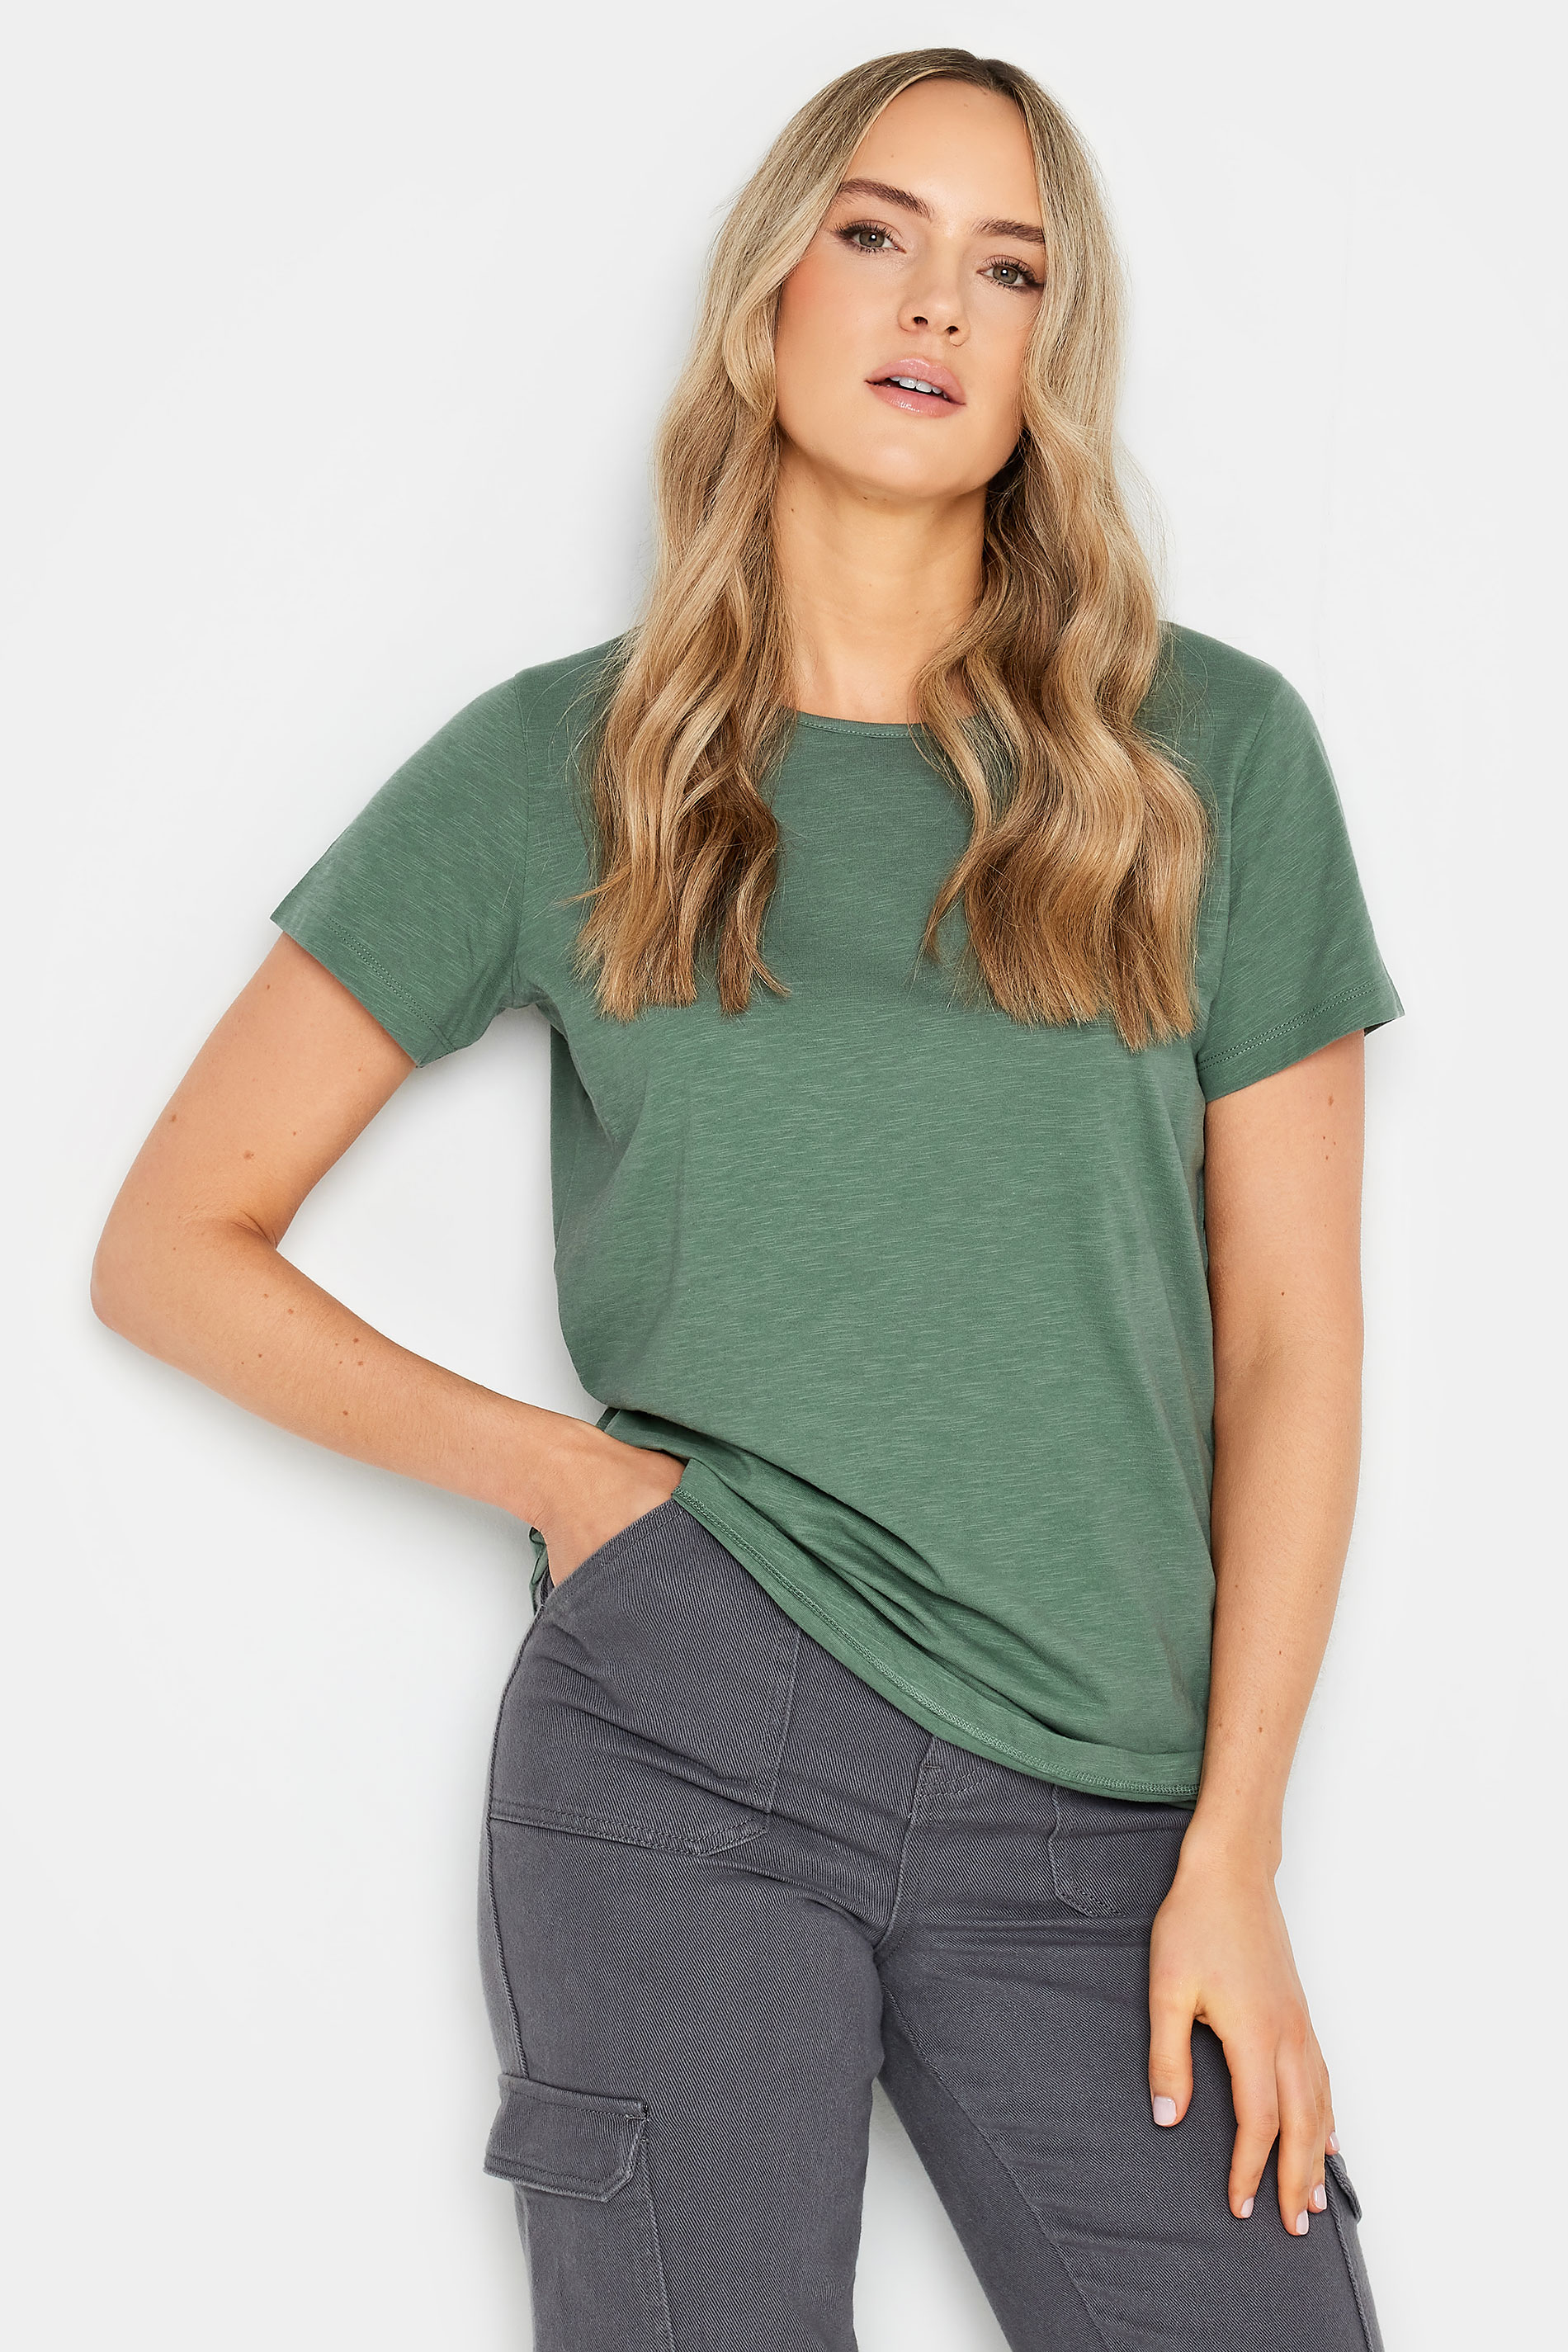 LTS Tall Womens Khaki Green Short Sleeve T-Shirt | Long Tall Sally 1